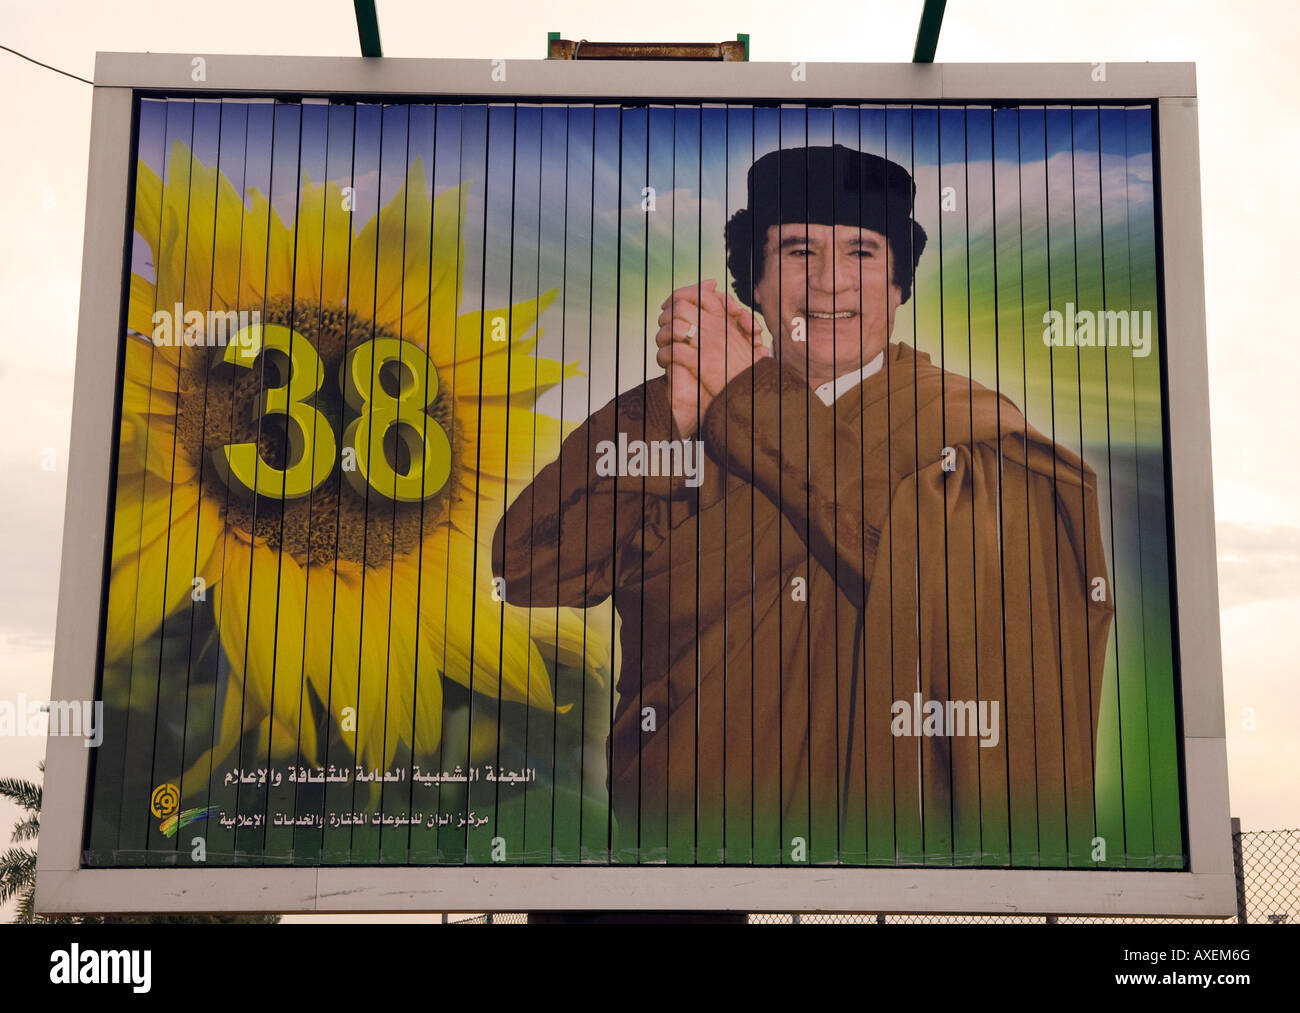 Affiche de propagande pour le colonel Muammar Kadhafi célébrant 38 ans depuis la Révolution et sa montée au pouvoir Tripoli Libye Banque D'Images